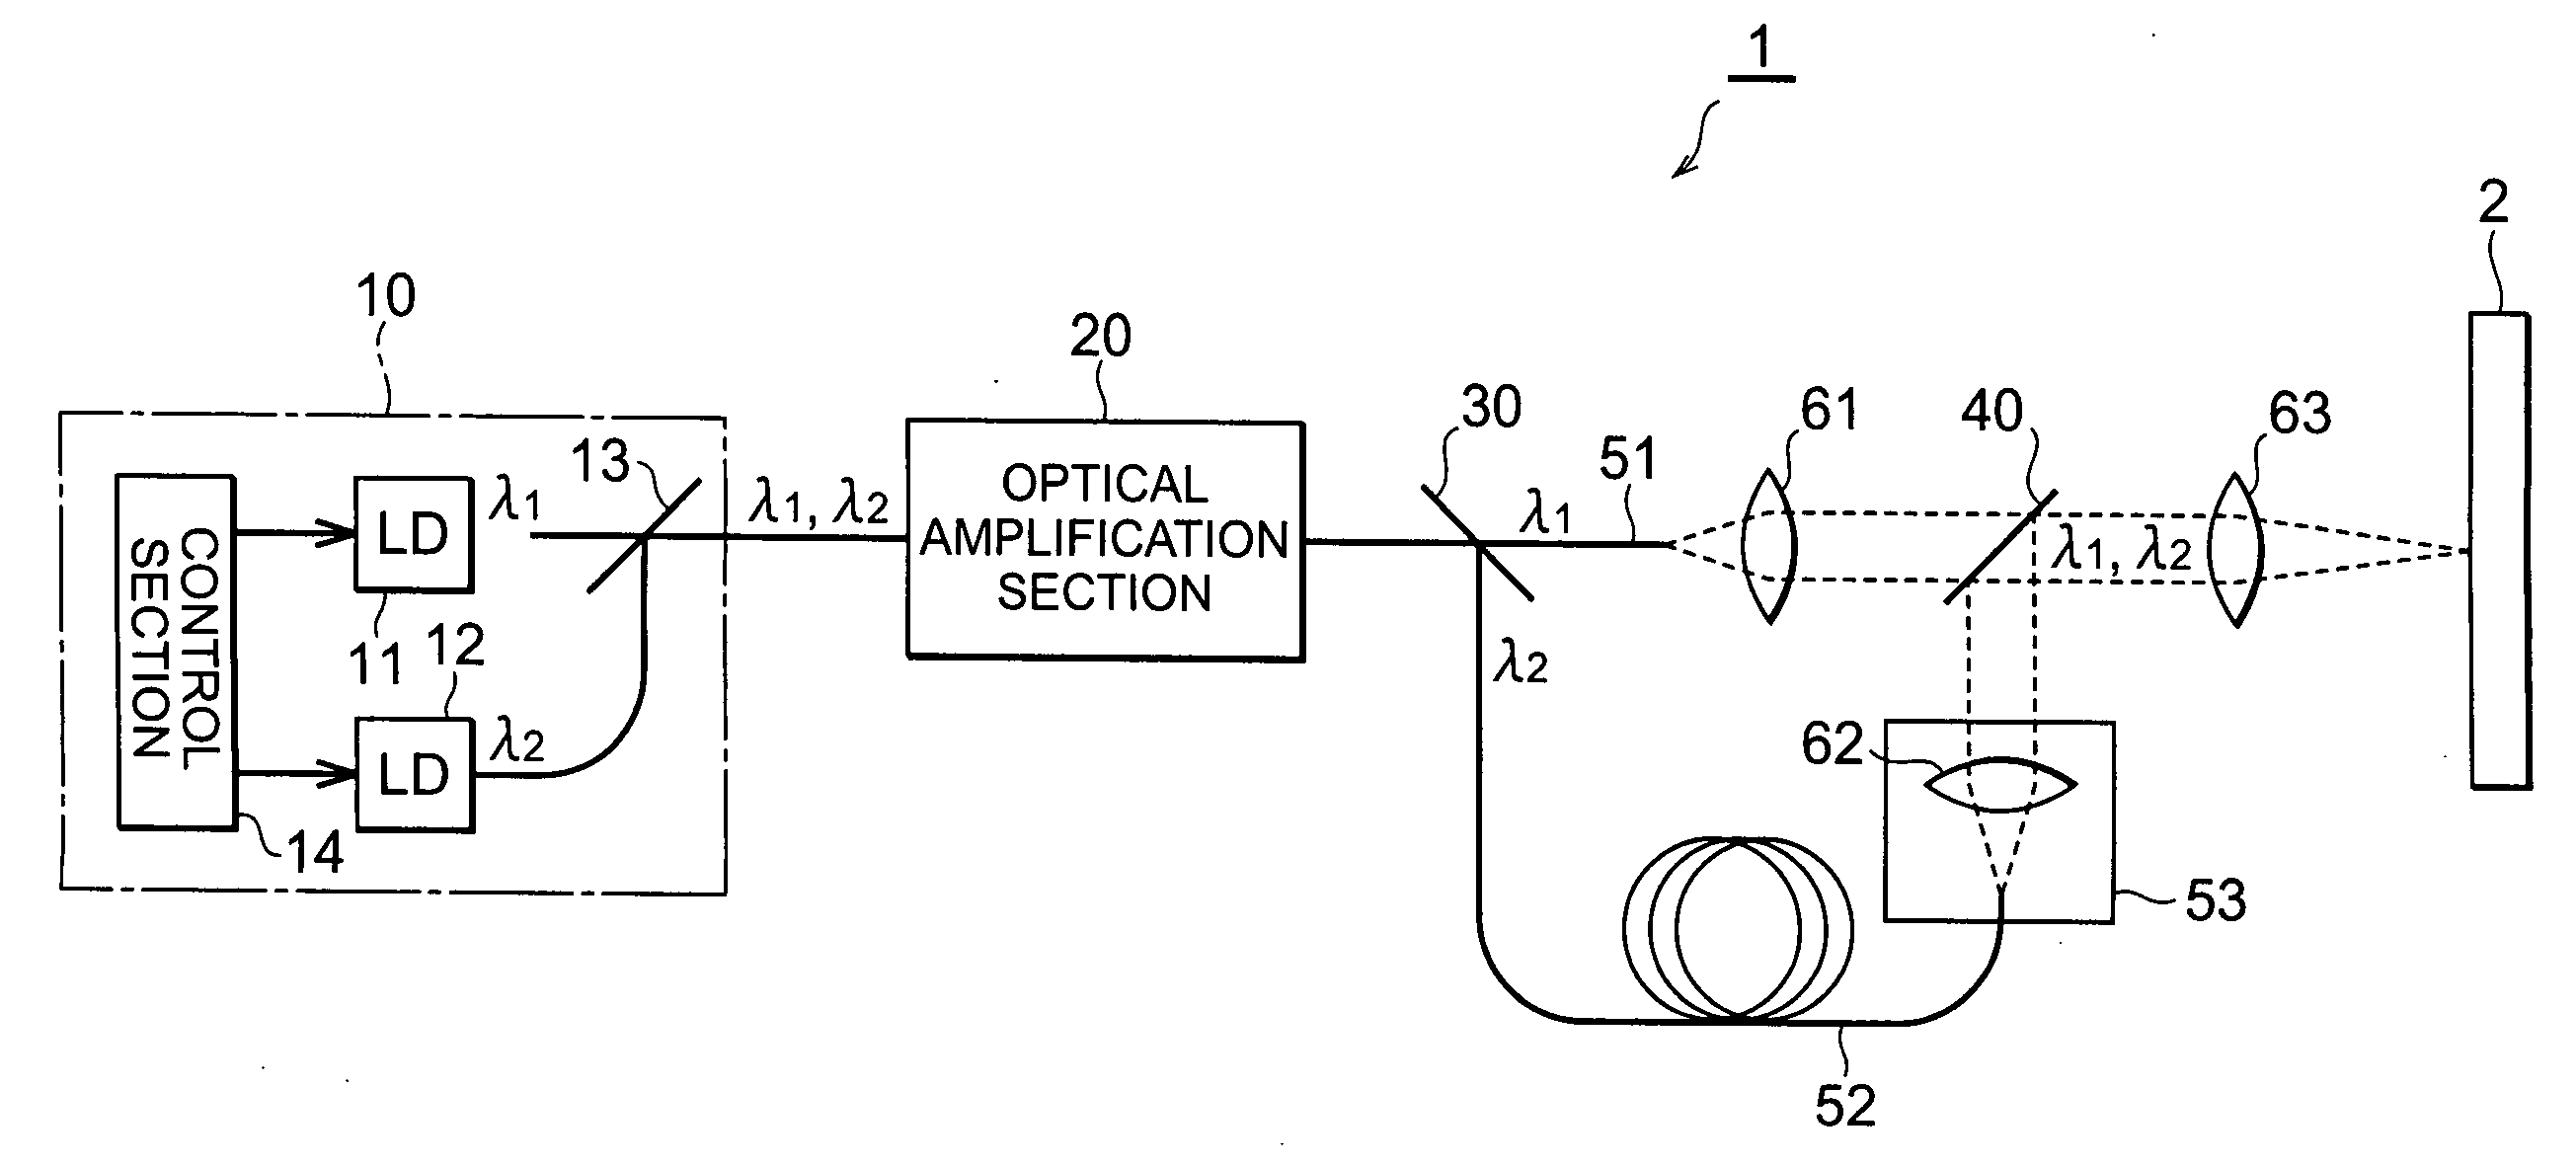 Laser light source, method of laser oscillation, and method of laser processing